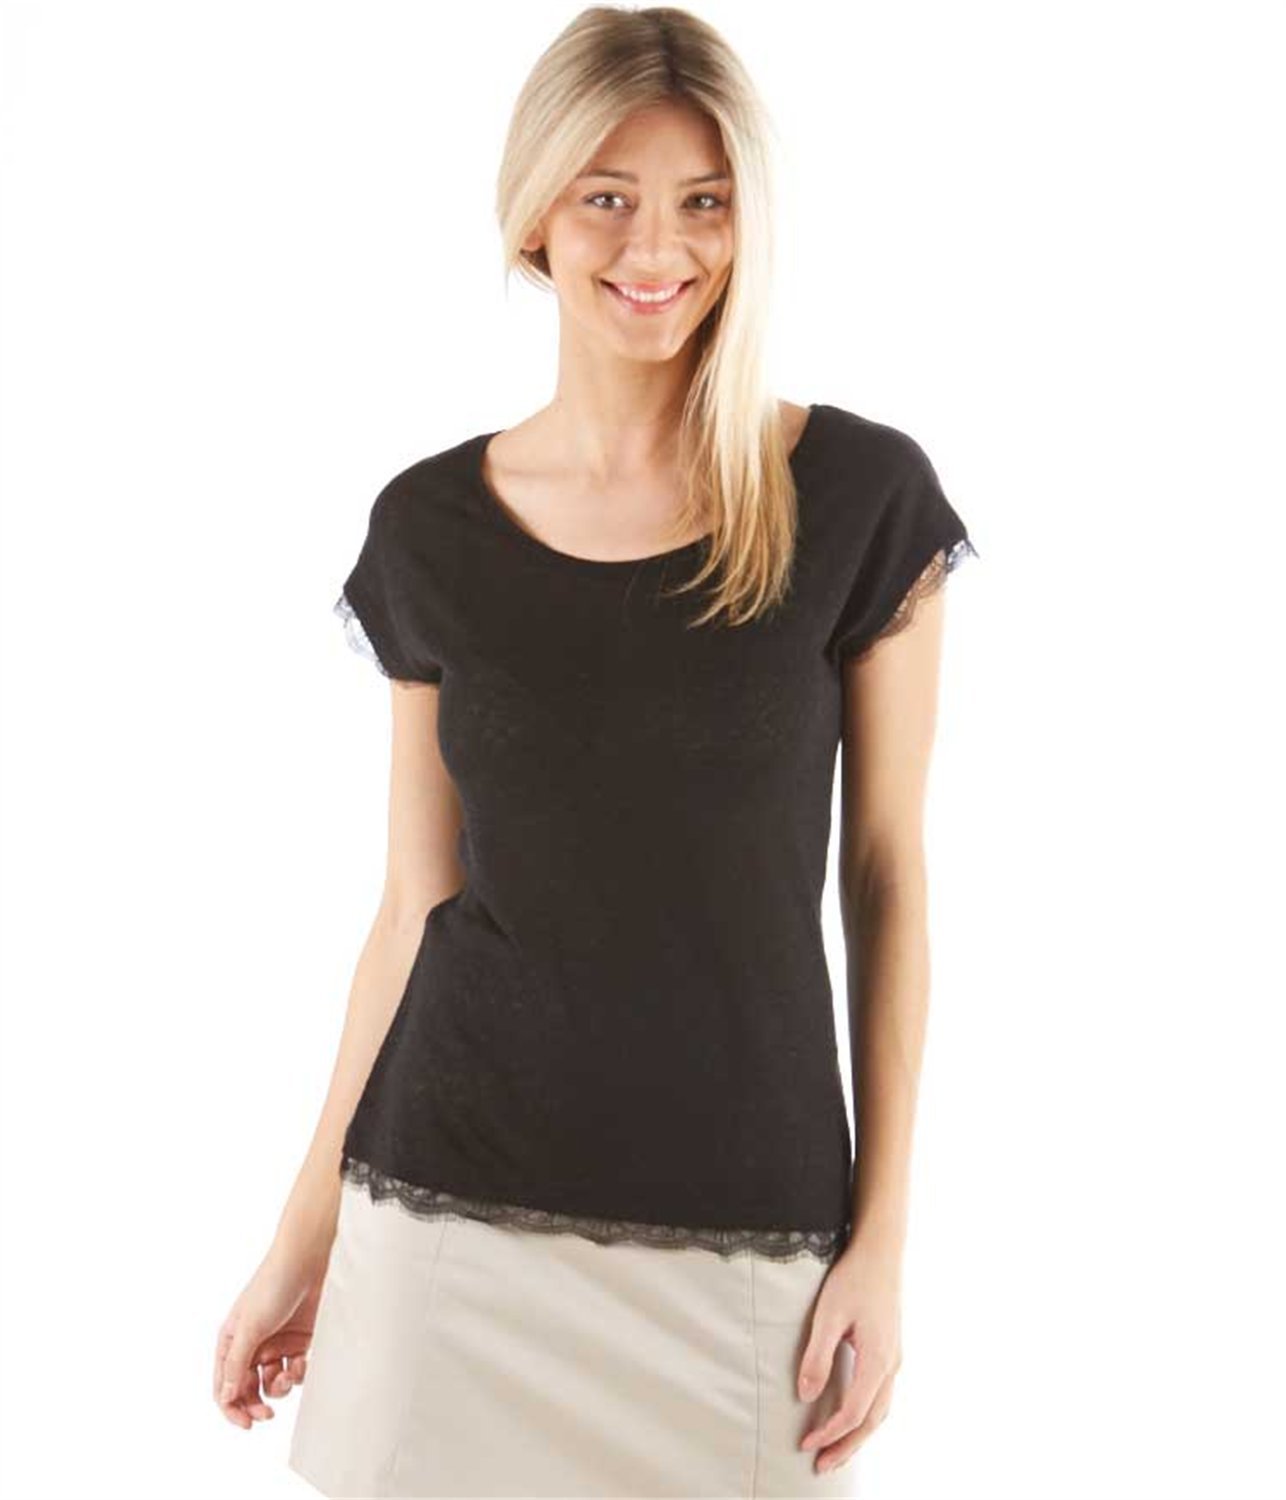 Camaieu fekete csipkés női t-shirt fotója